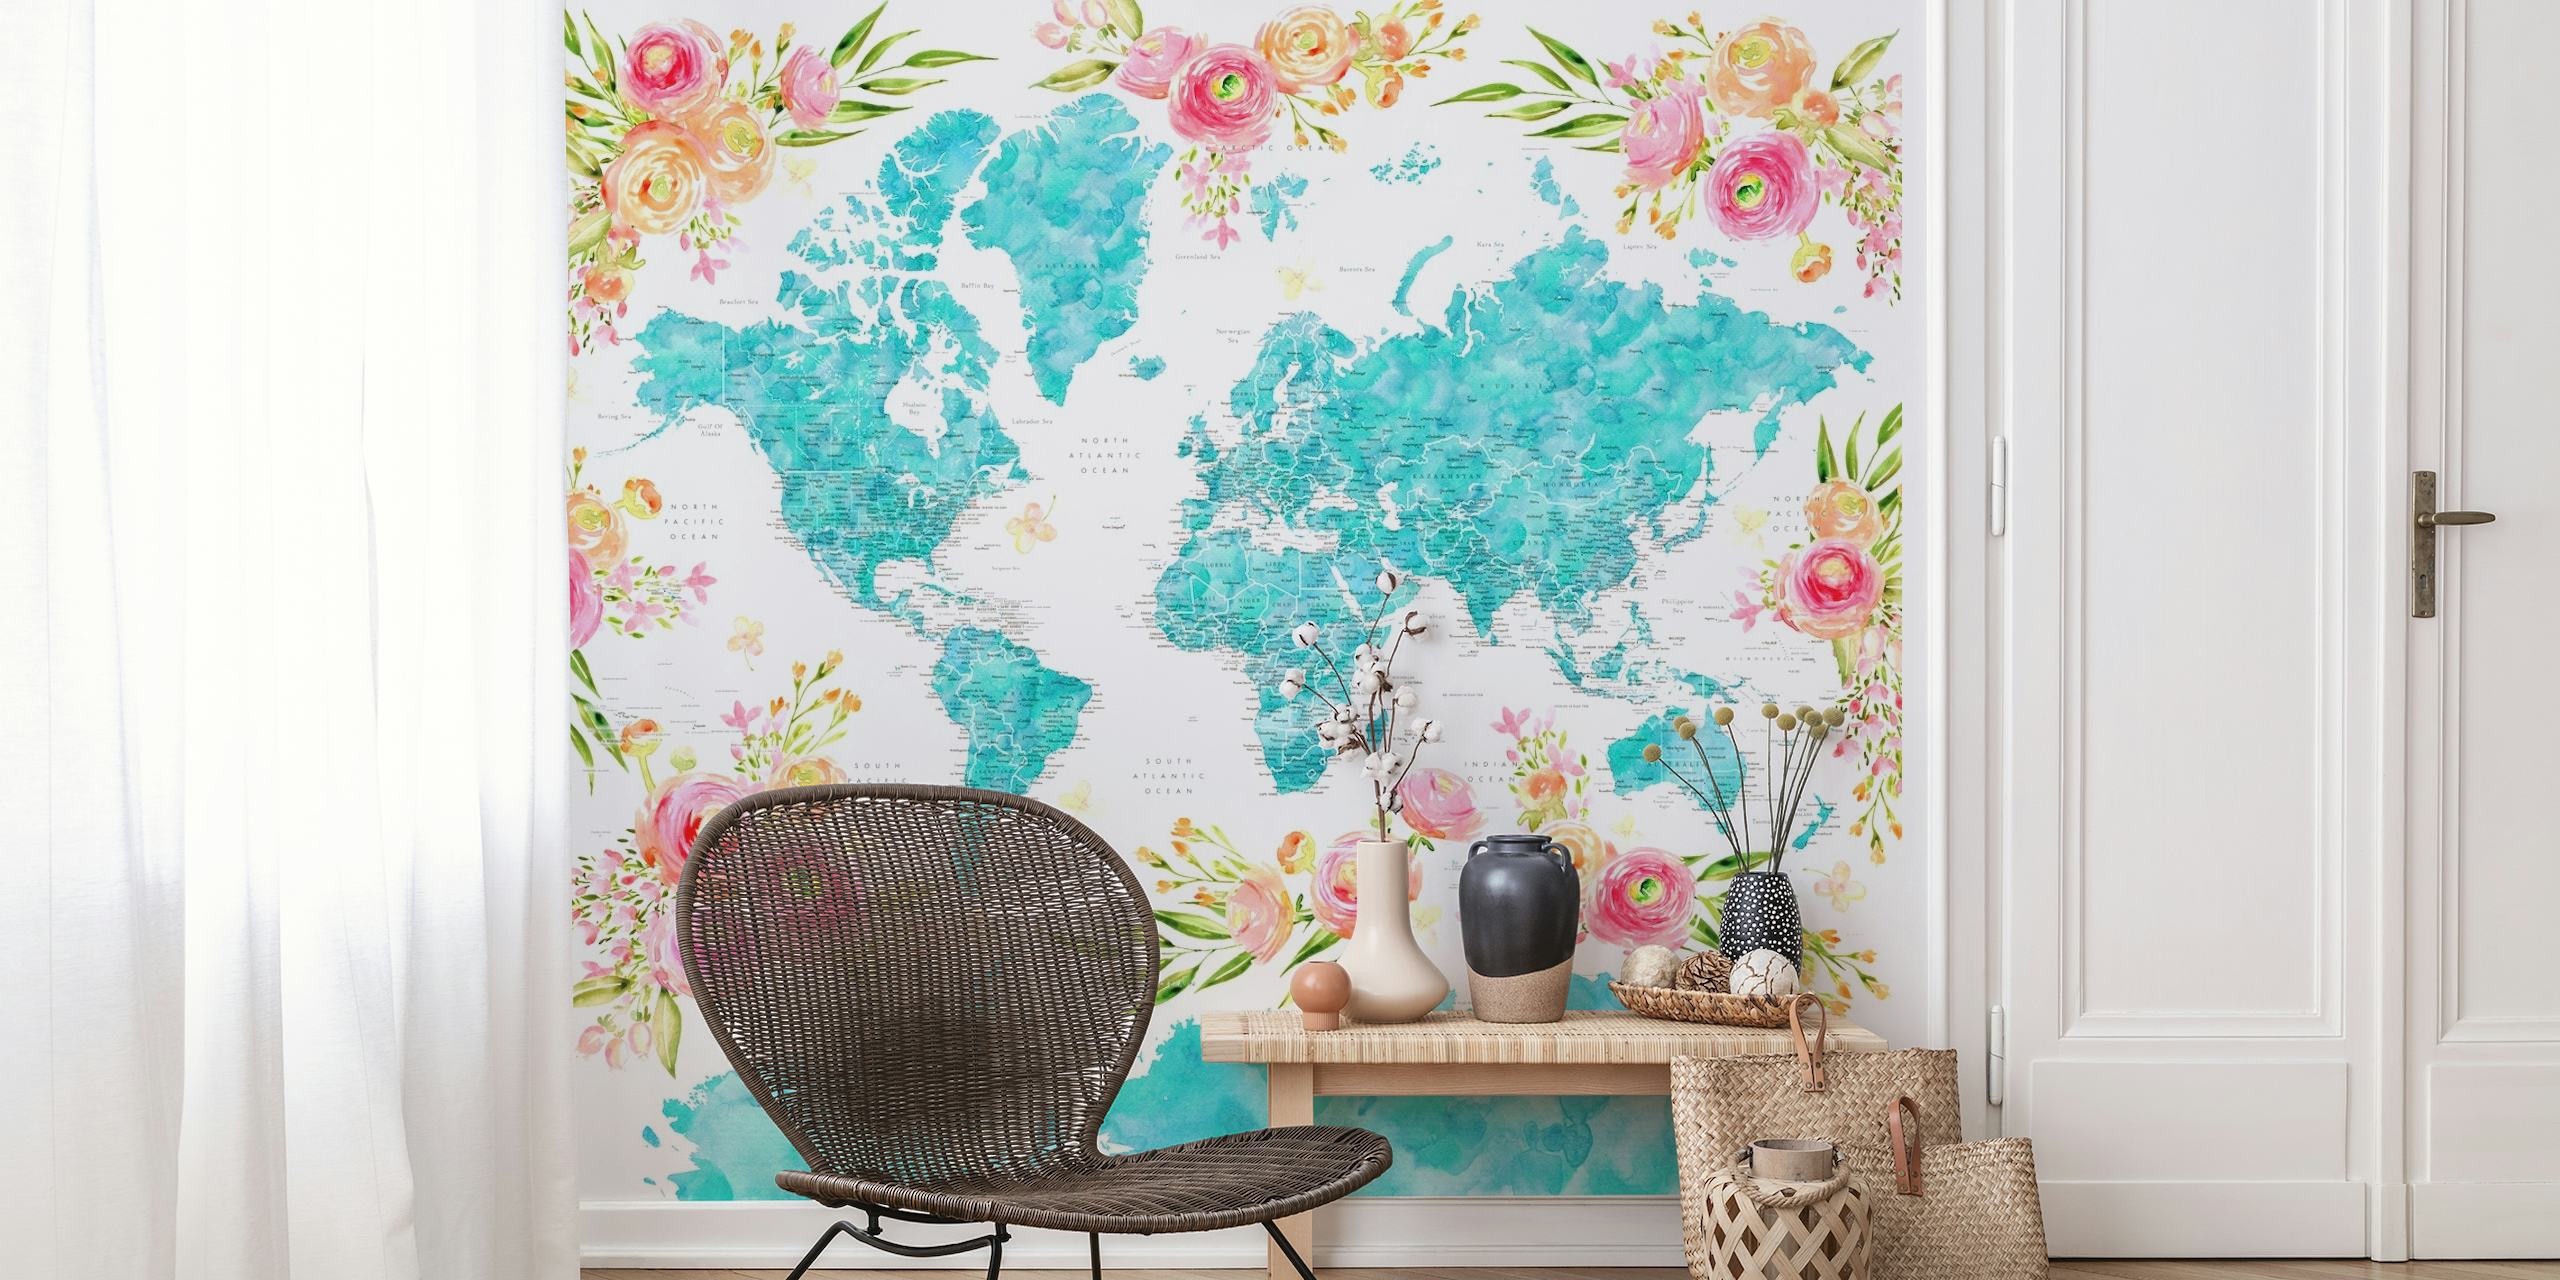 Papier peint mural carte du monde coloré avec des motifs floraux décorant les continents